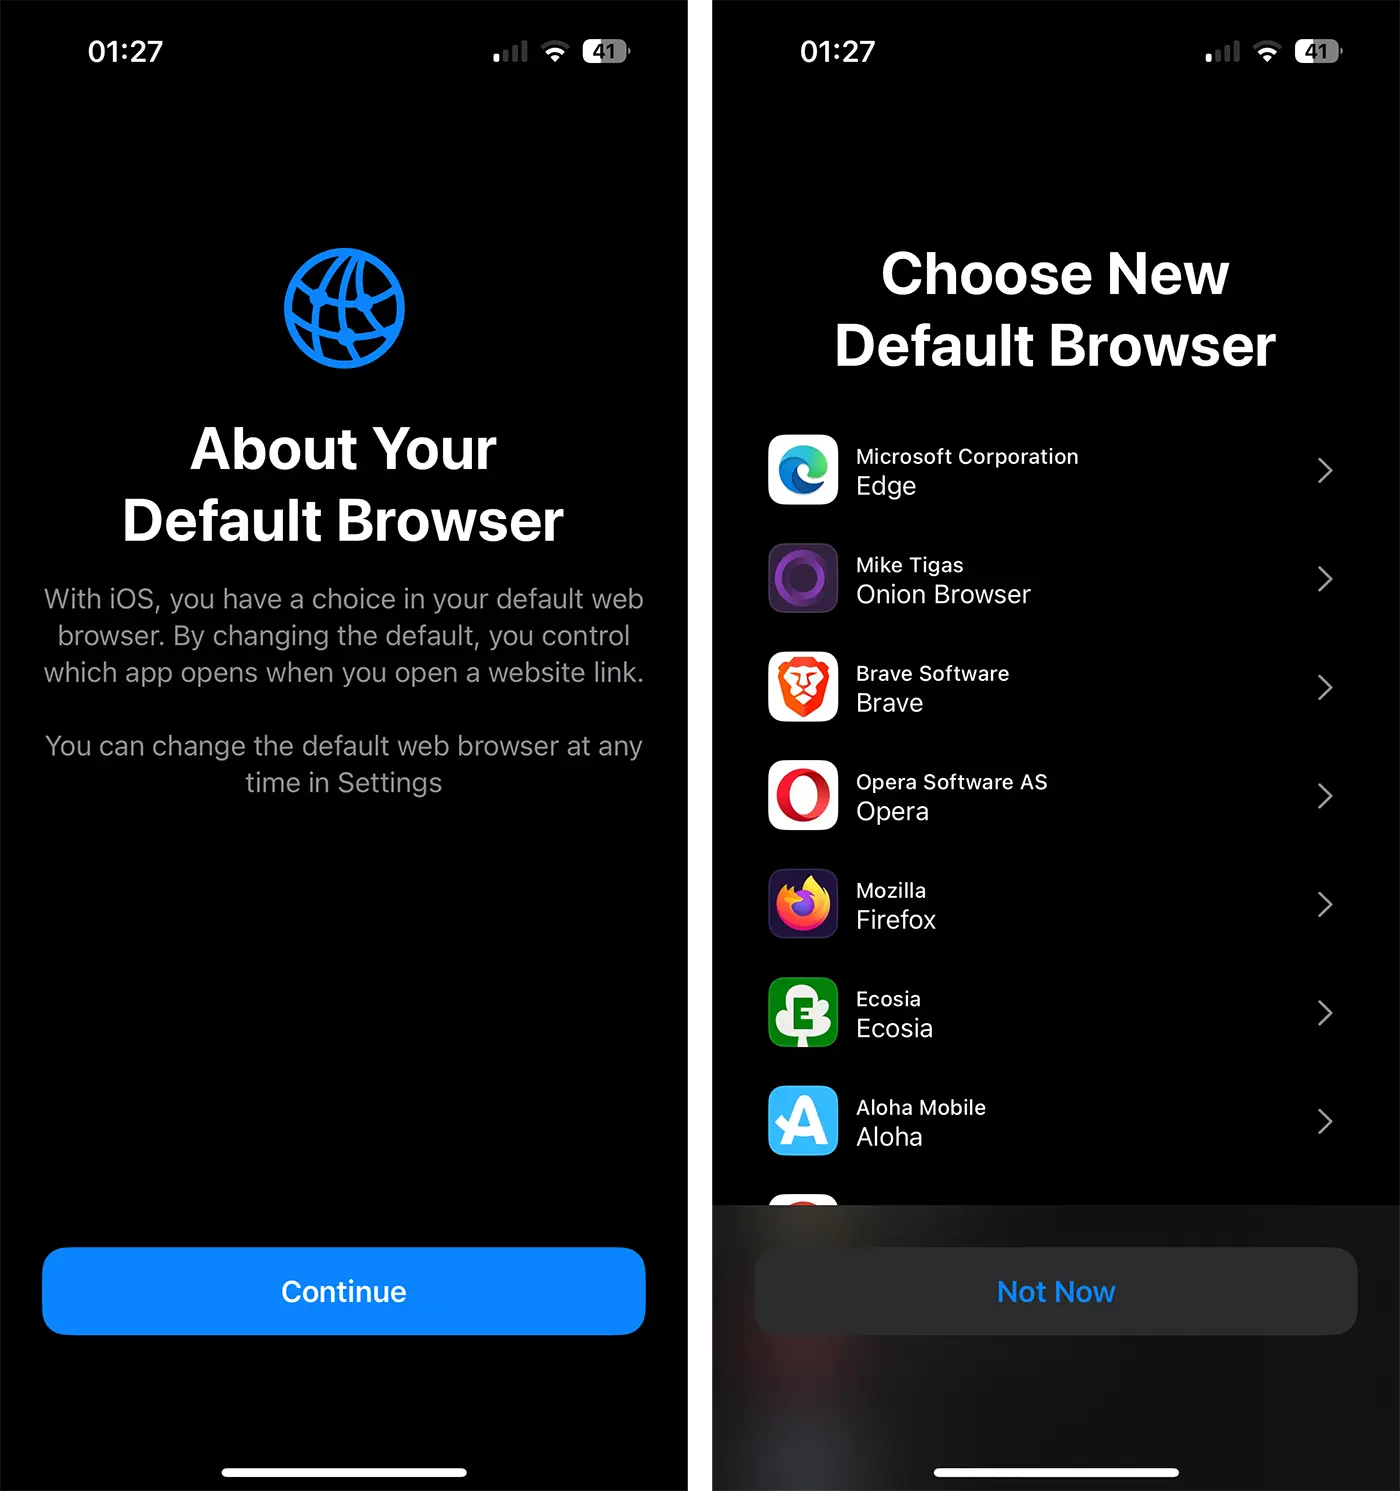 Choose New Default Browser